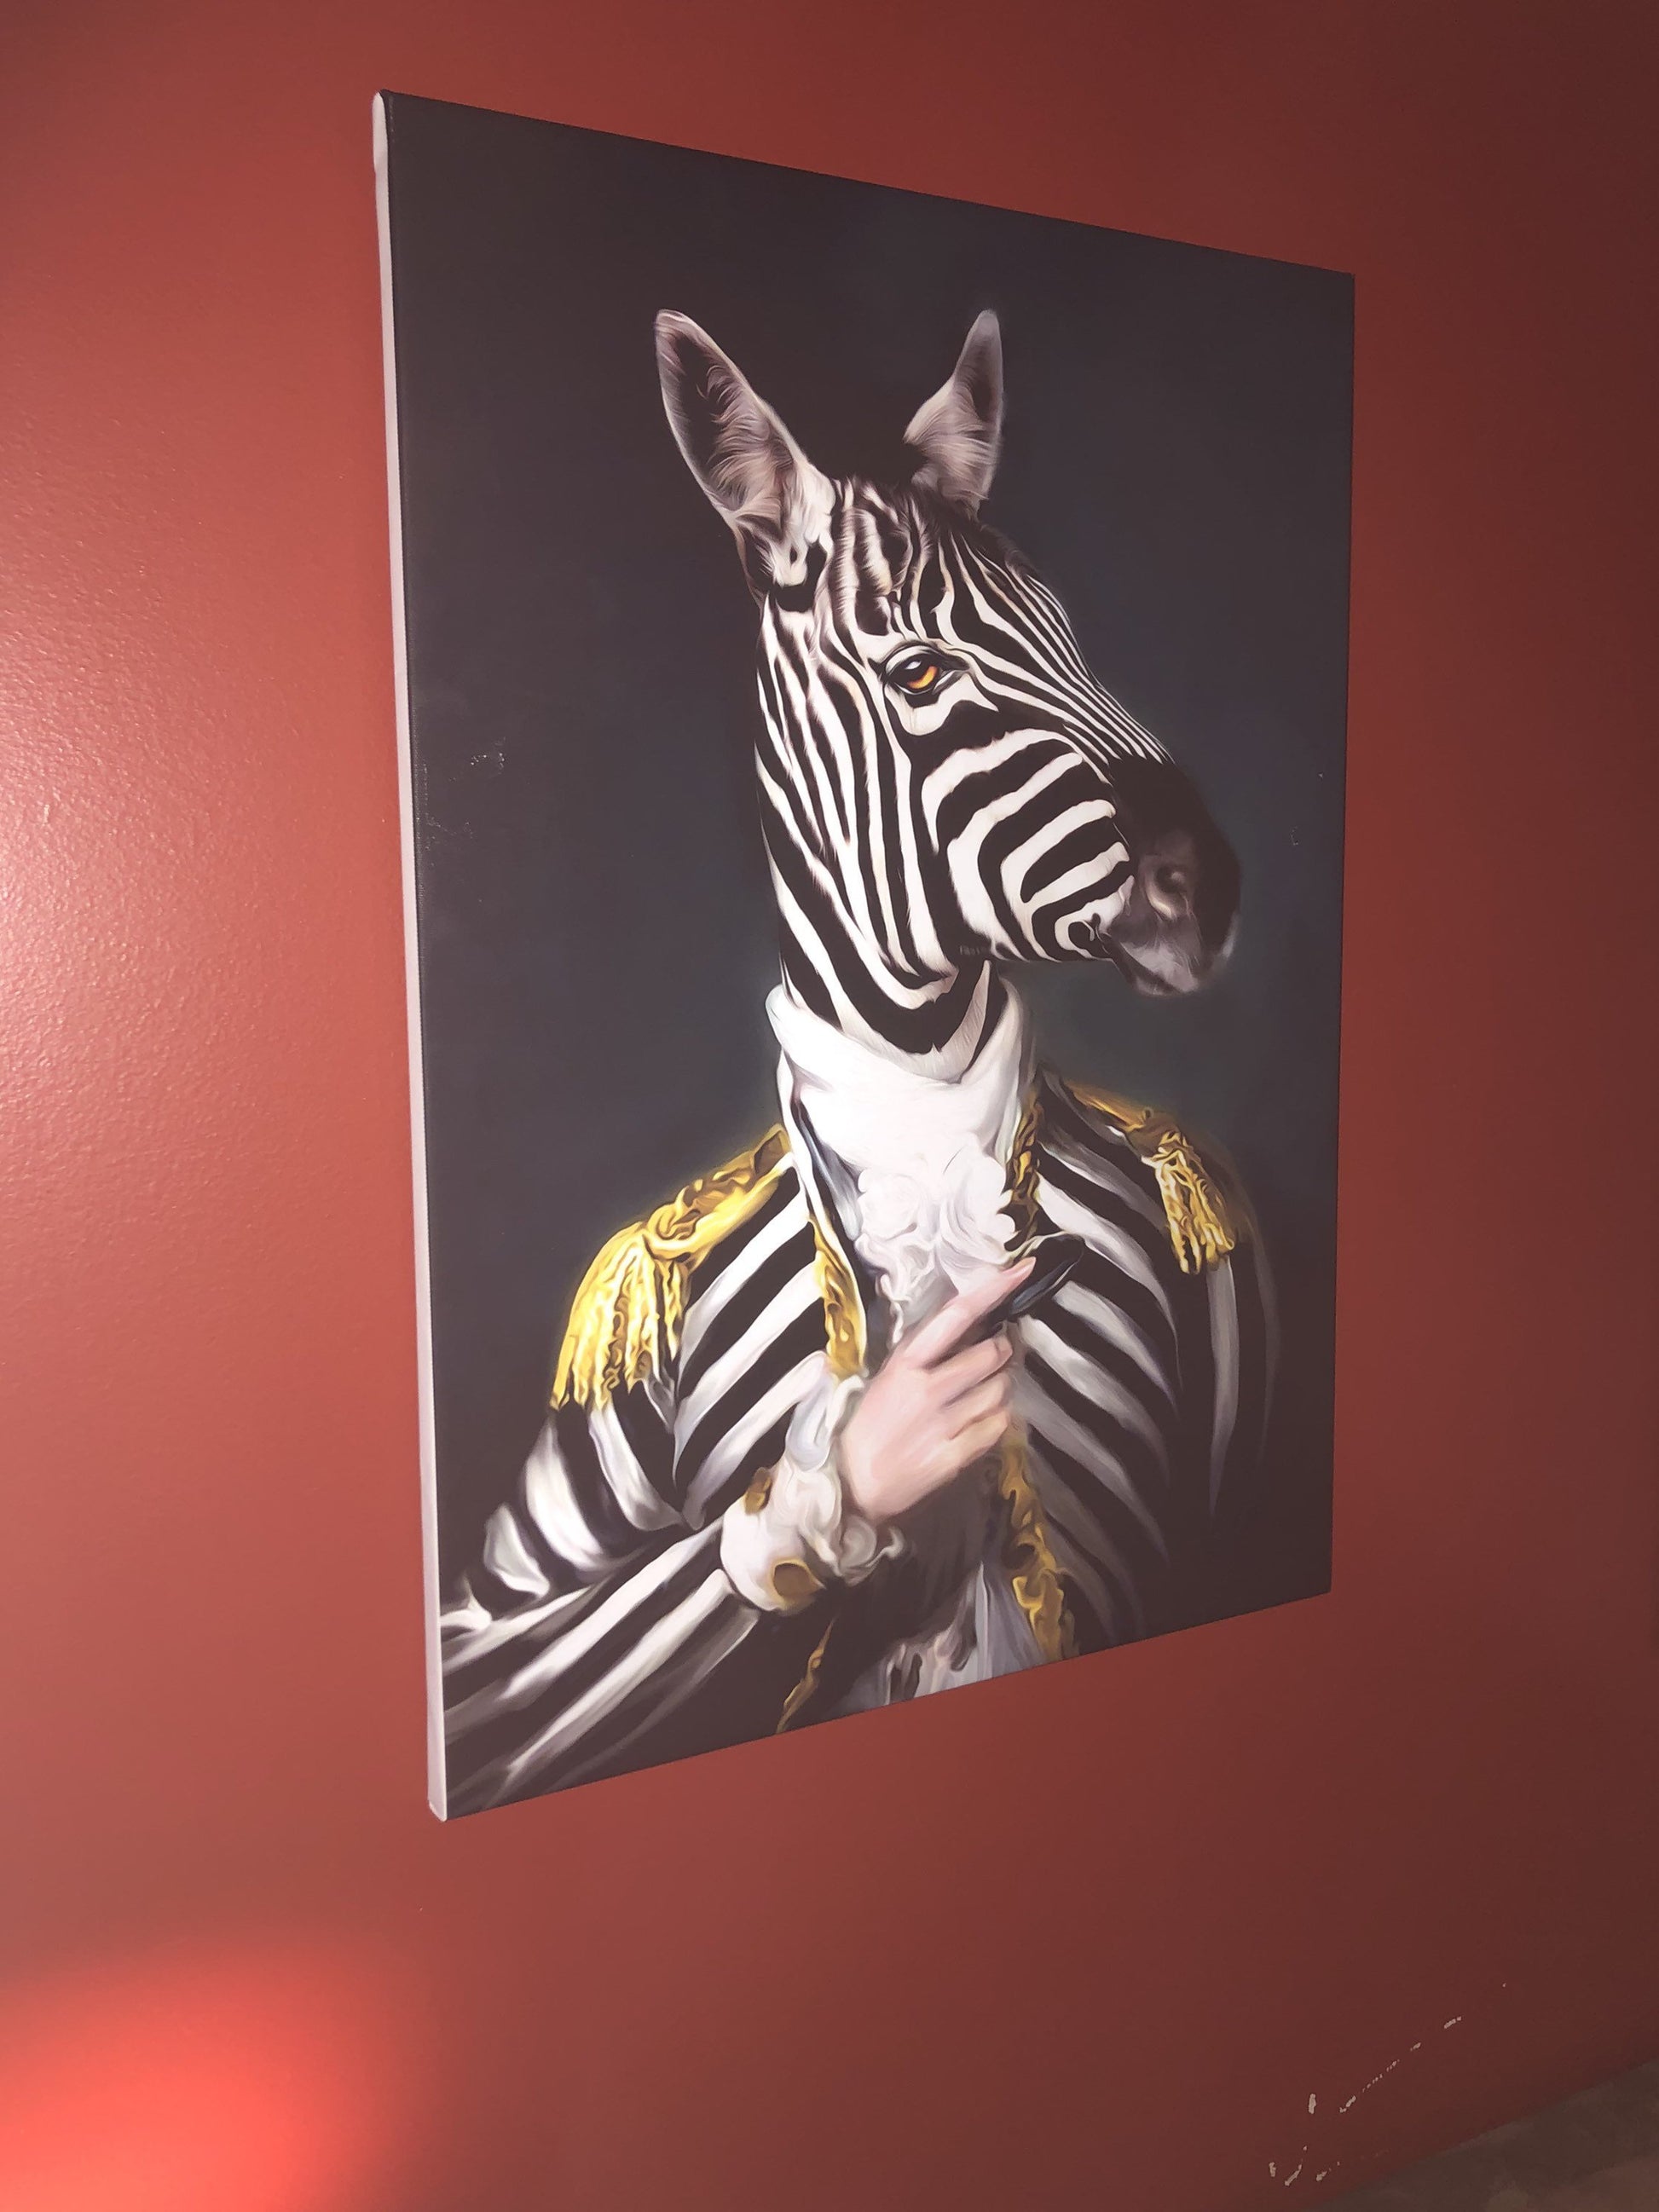 Wall decor, canvas print "Mr. Zebra" - Classy Canvas Designs